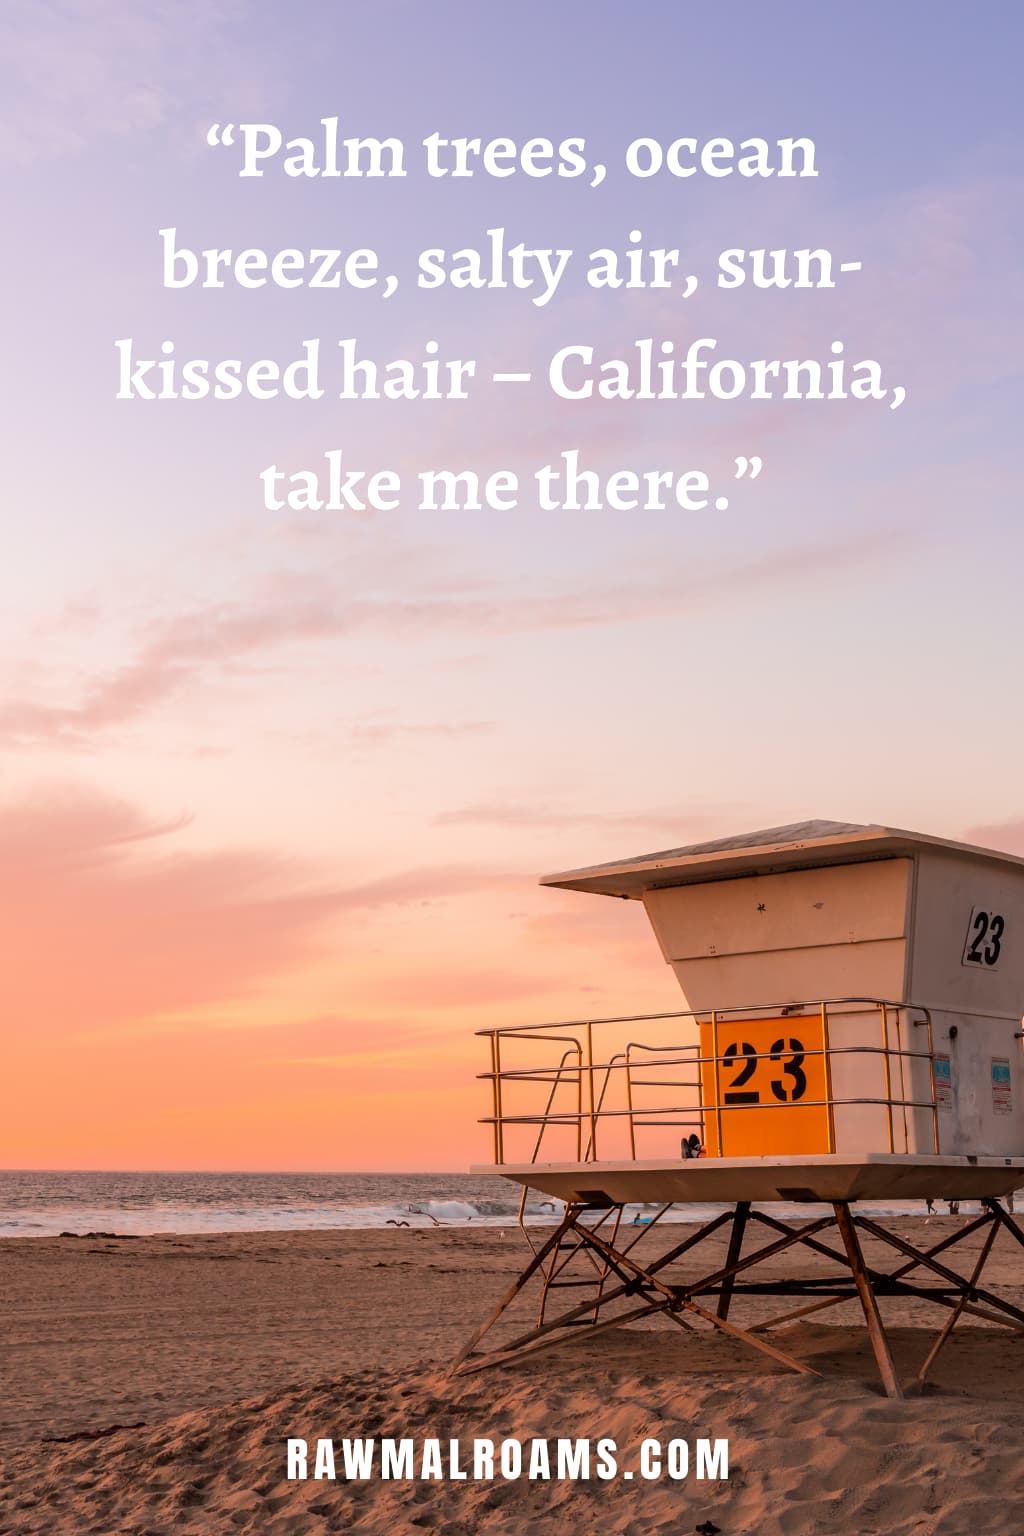 200+ Creative California Instagram Captions & Cali Quotes - DIVEIN